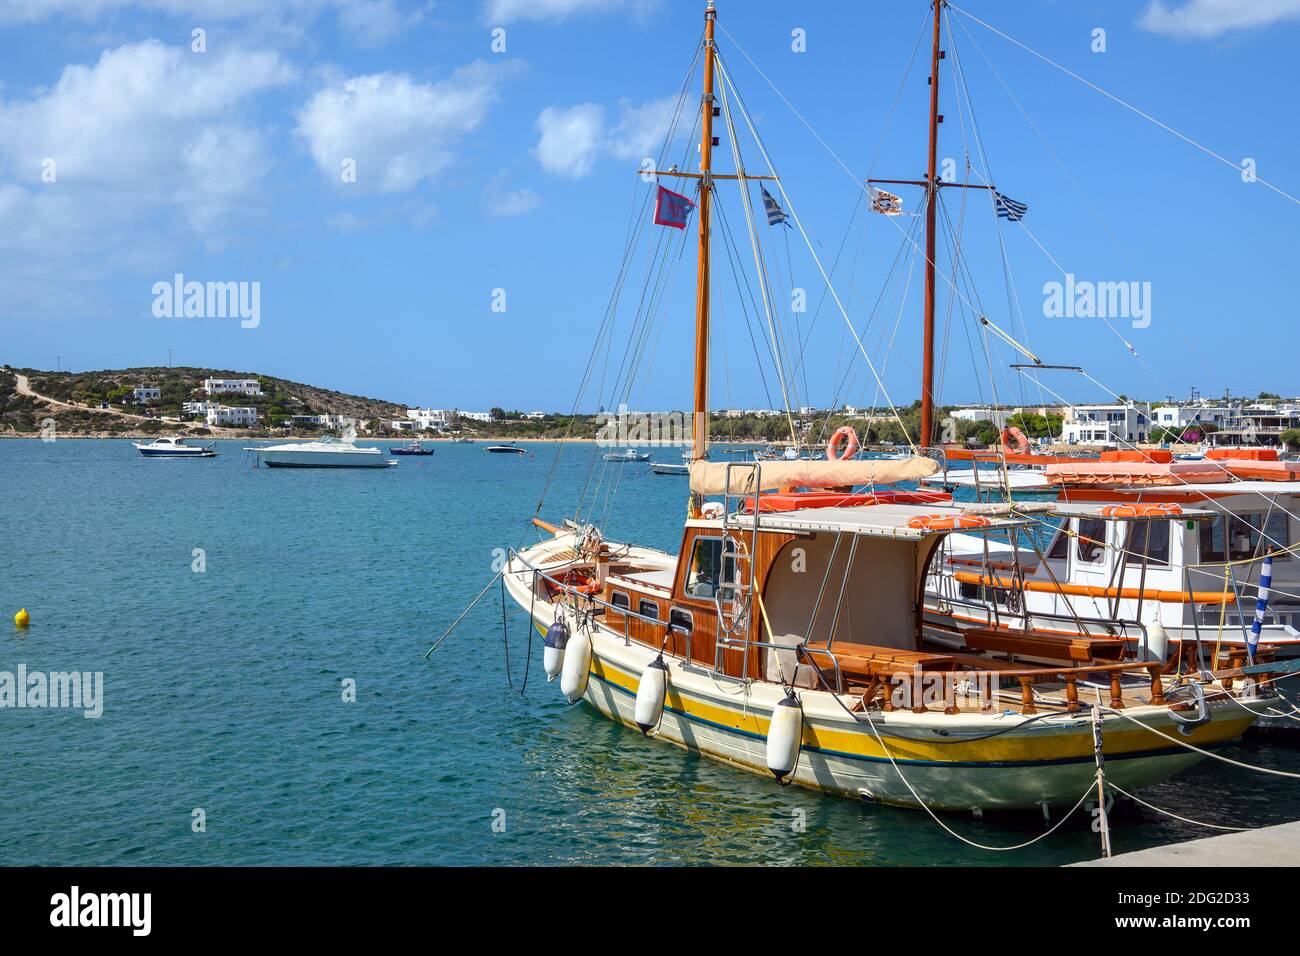 Bateaux de pêche dans le port d'Aliki. Aliki est un magnifique village côtier avec un port pittoresque sur l'île de Paros. Cyclades, Grèce Banque D'Images